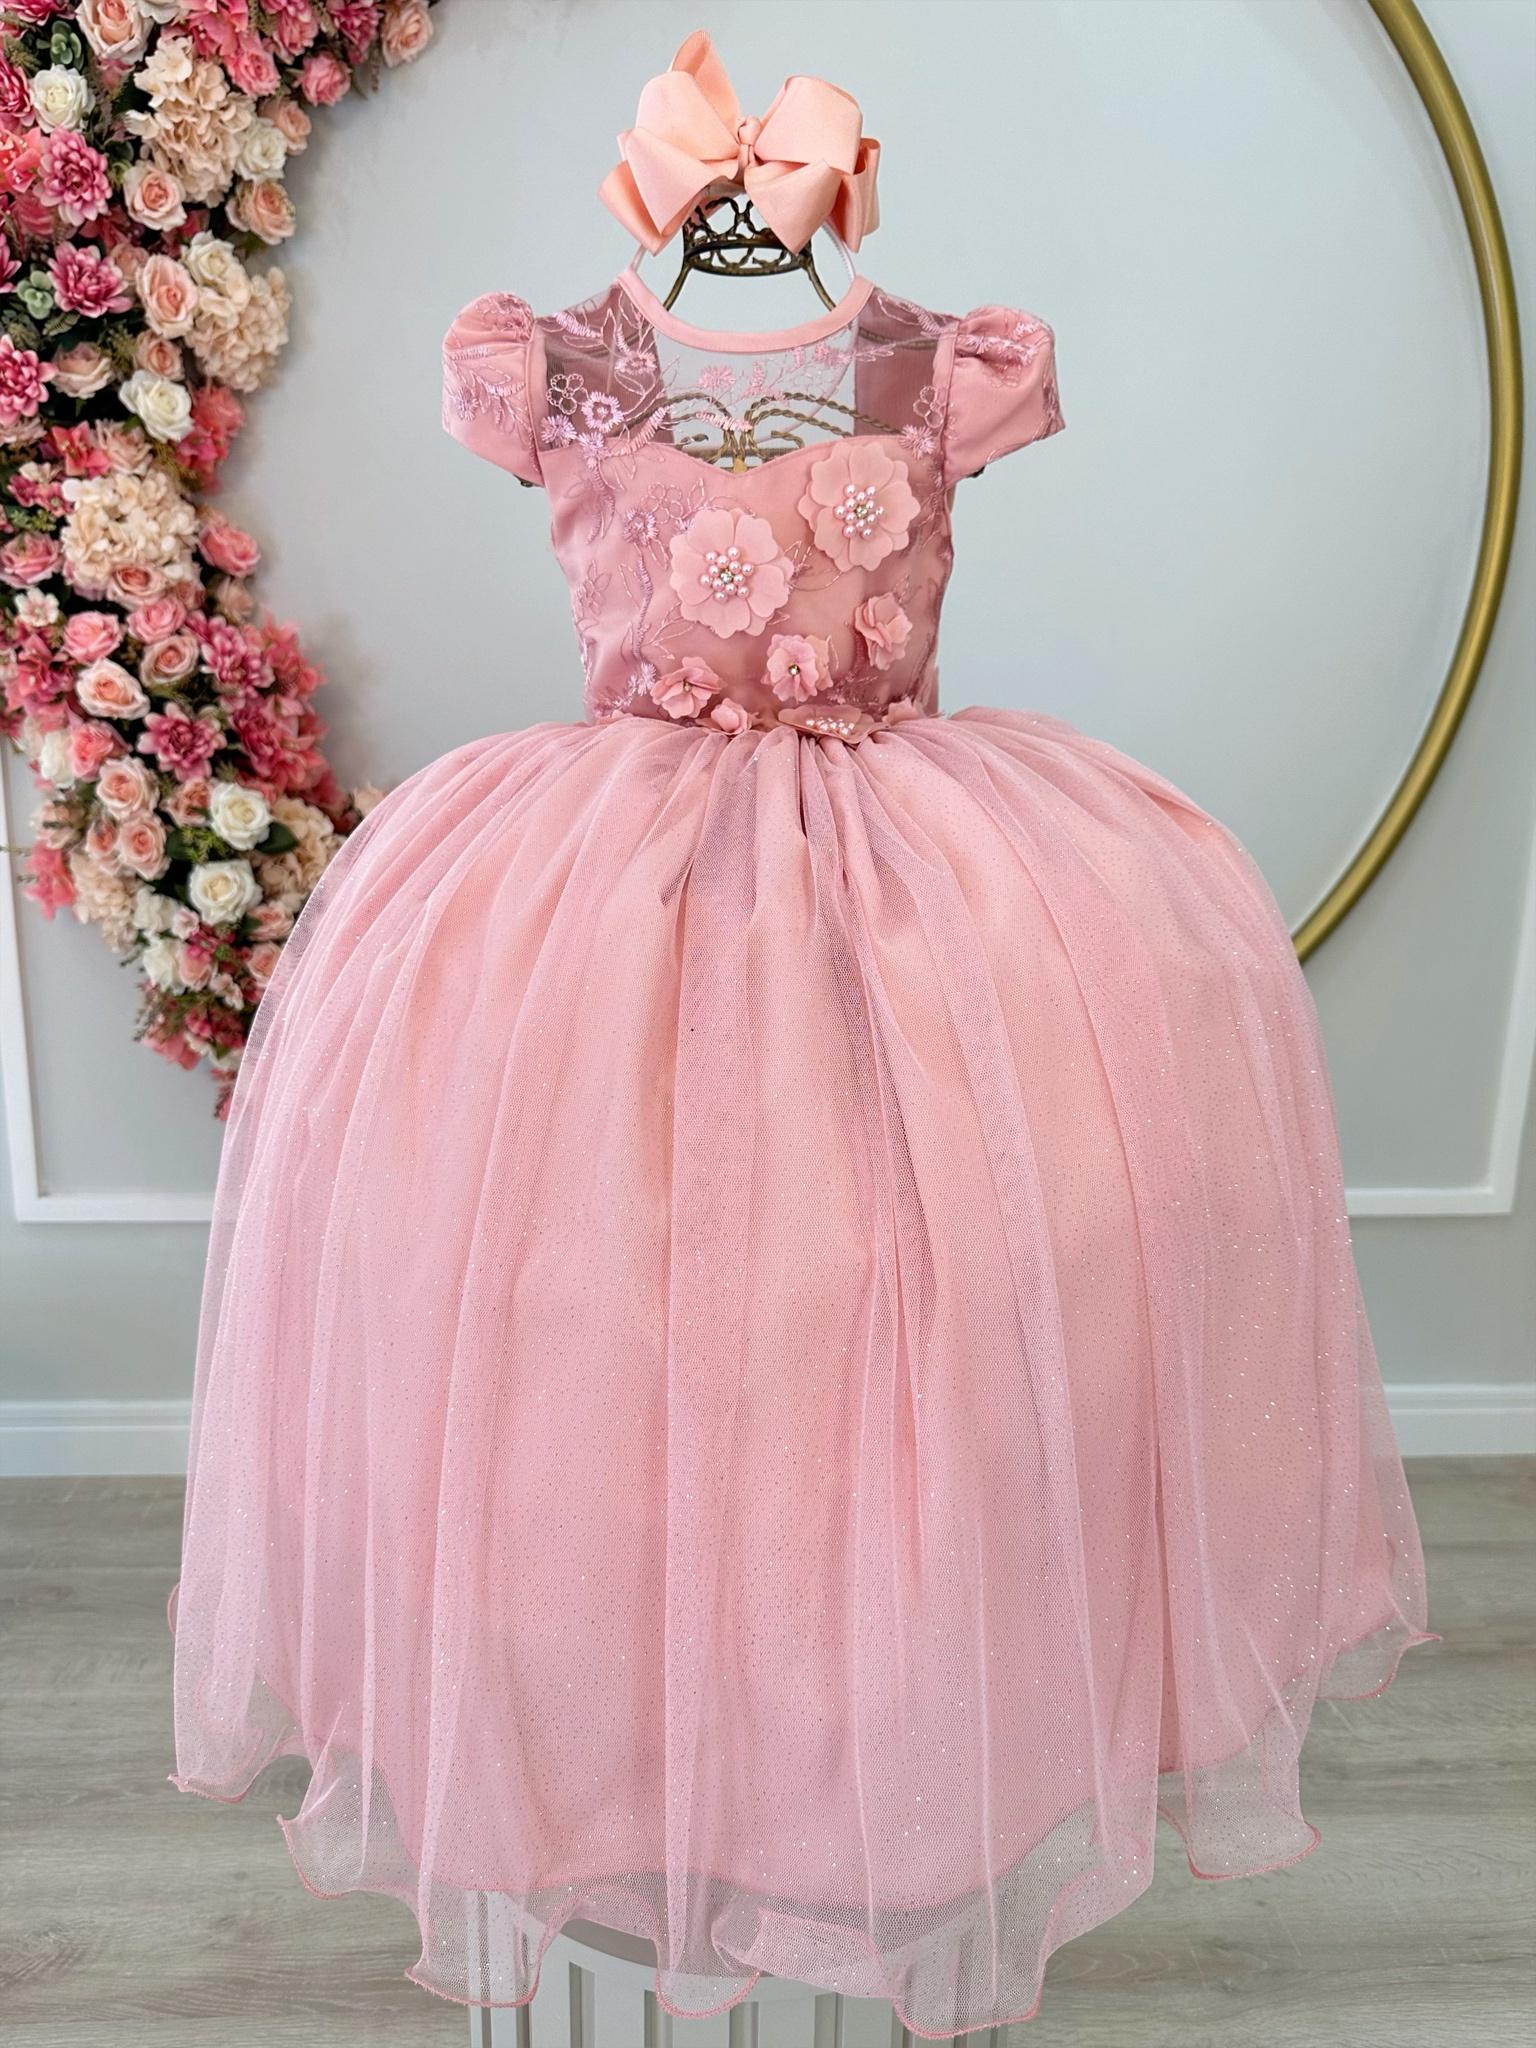 Vestido Infantil Rose C/ Aplique Flores e Renda Luxo Damas